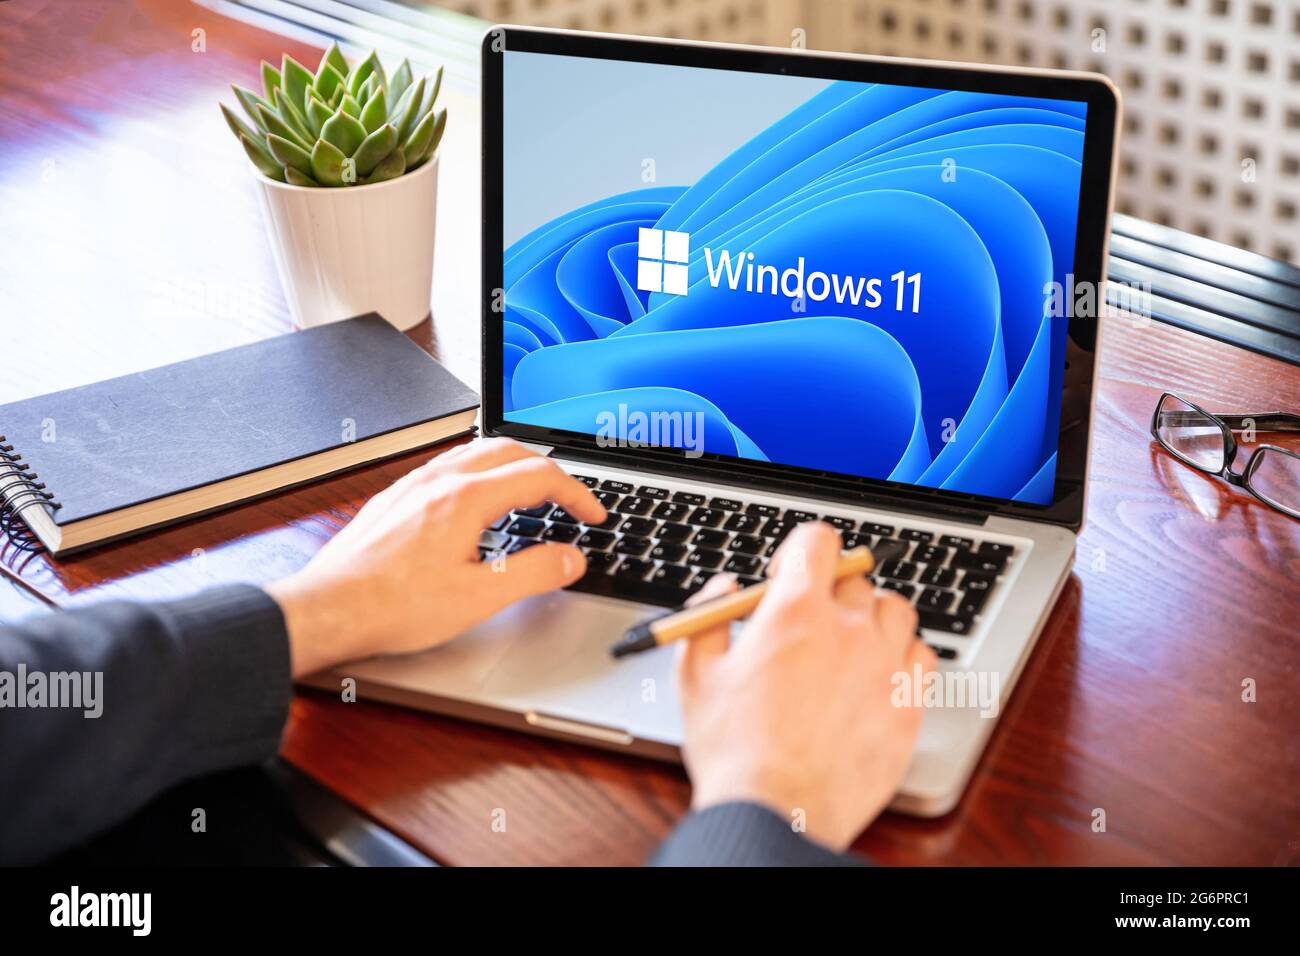 Griechenland Athen, Juli 8 2021. Mann arbeitet mit einem Laptop, Windows 11 neues Microsoft-Betriebssystem auf dem Computerbildschirm, Büro Schreibtisch Hintergrund. Stockfoto